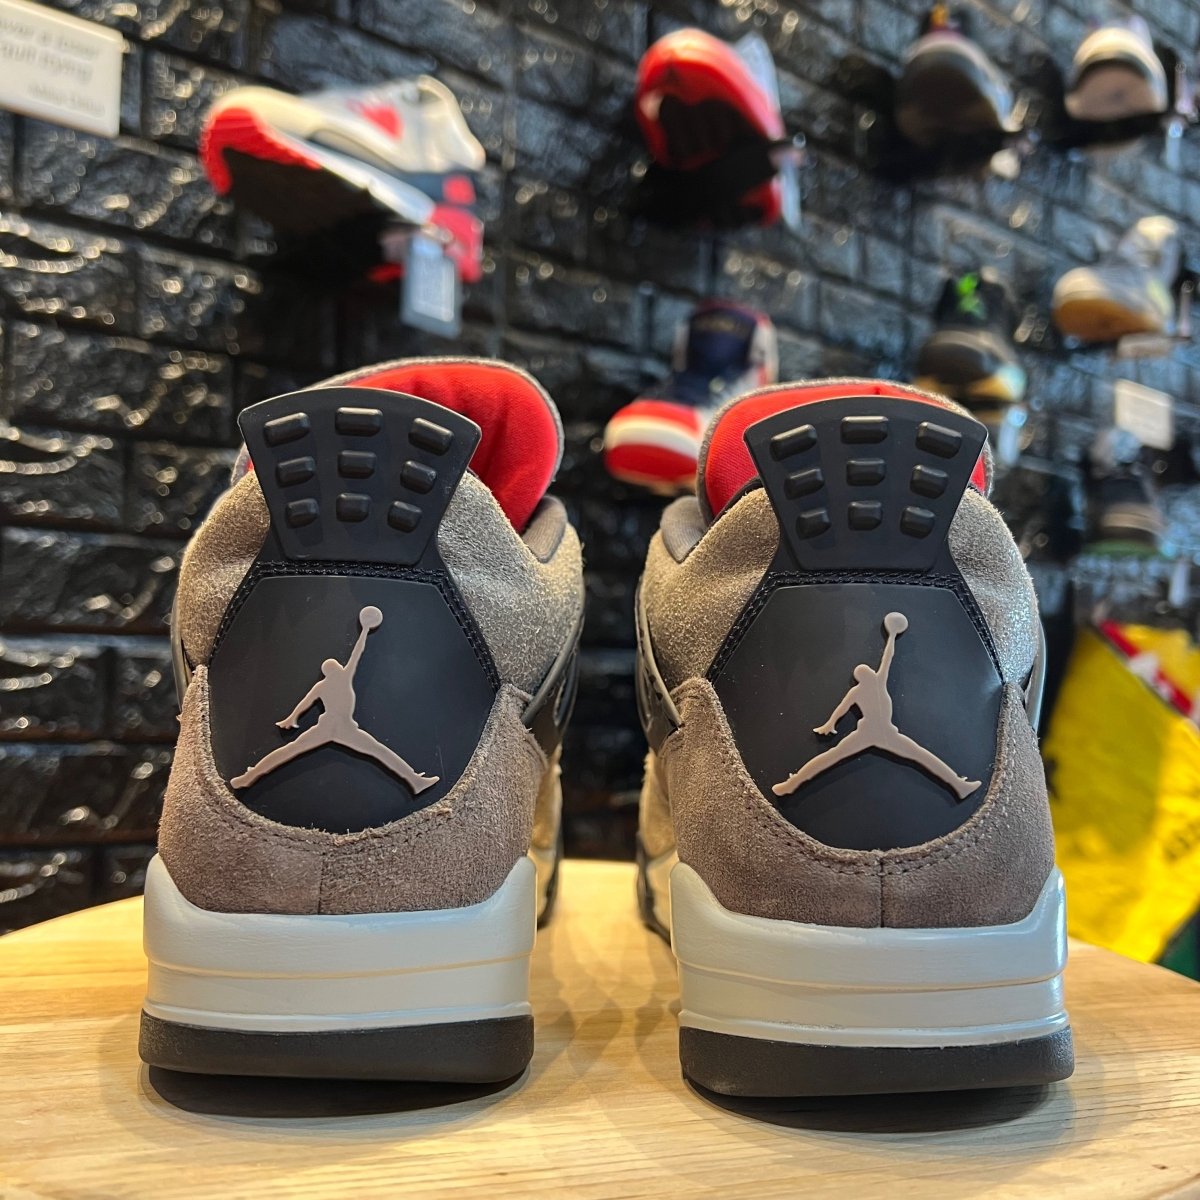 Jordan 4 Retro Taupe Haze - Gently Enjoyed (Used) Men 9 - Mid Sneaker - Jawns on Fire Sneakers & Streetwear